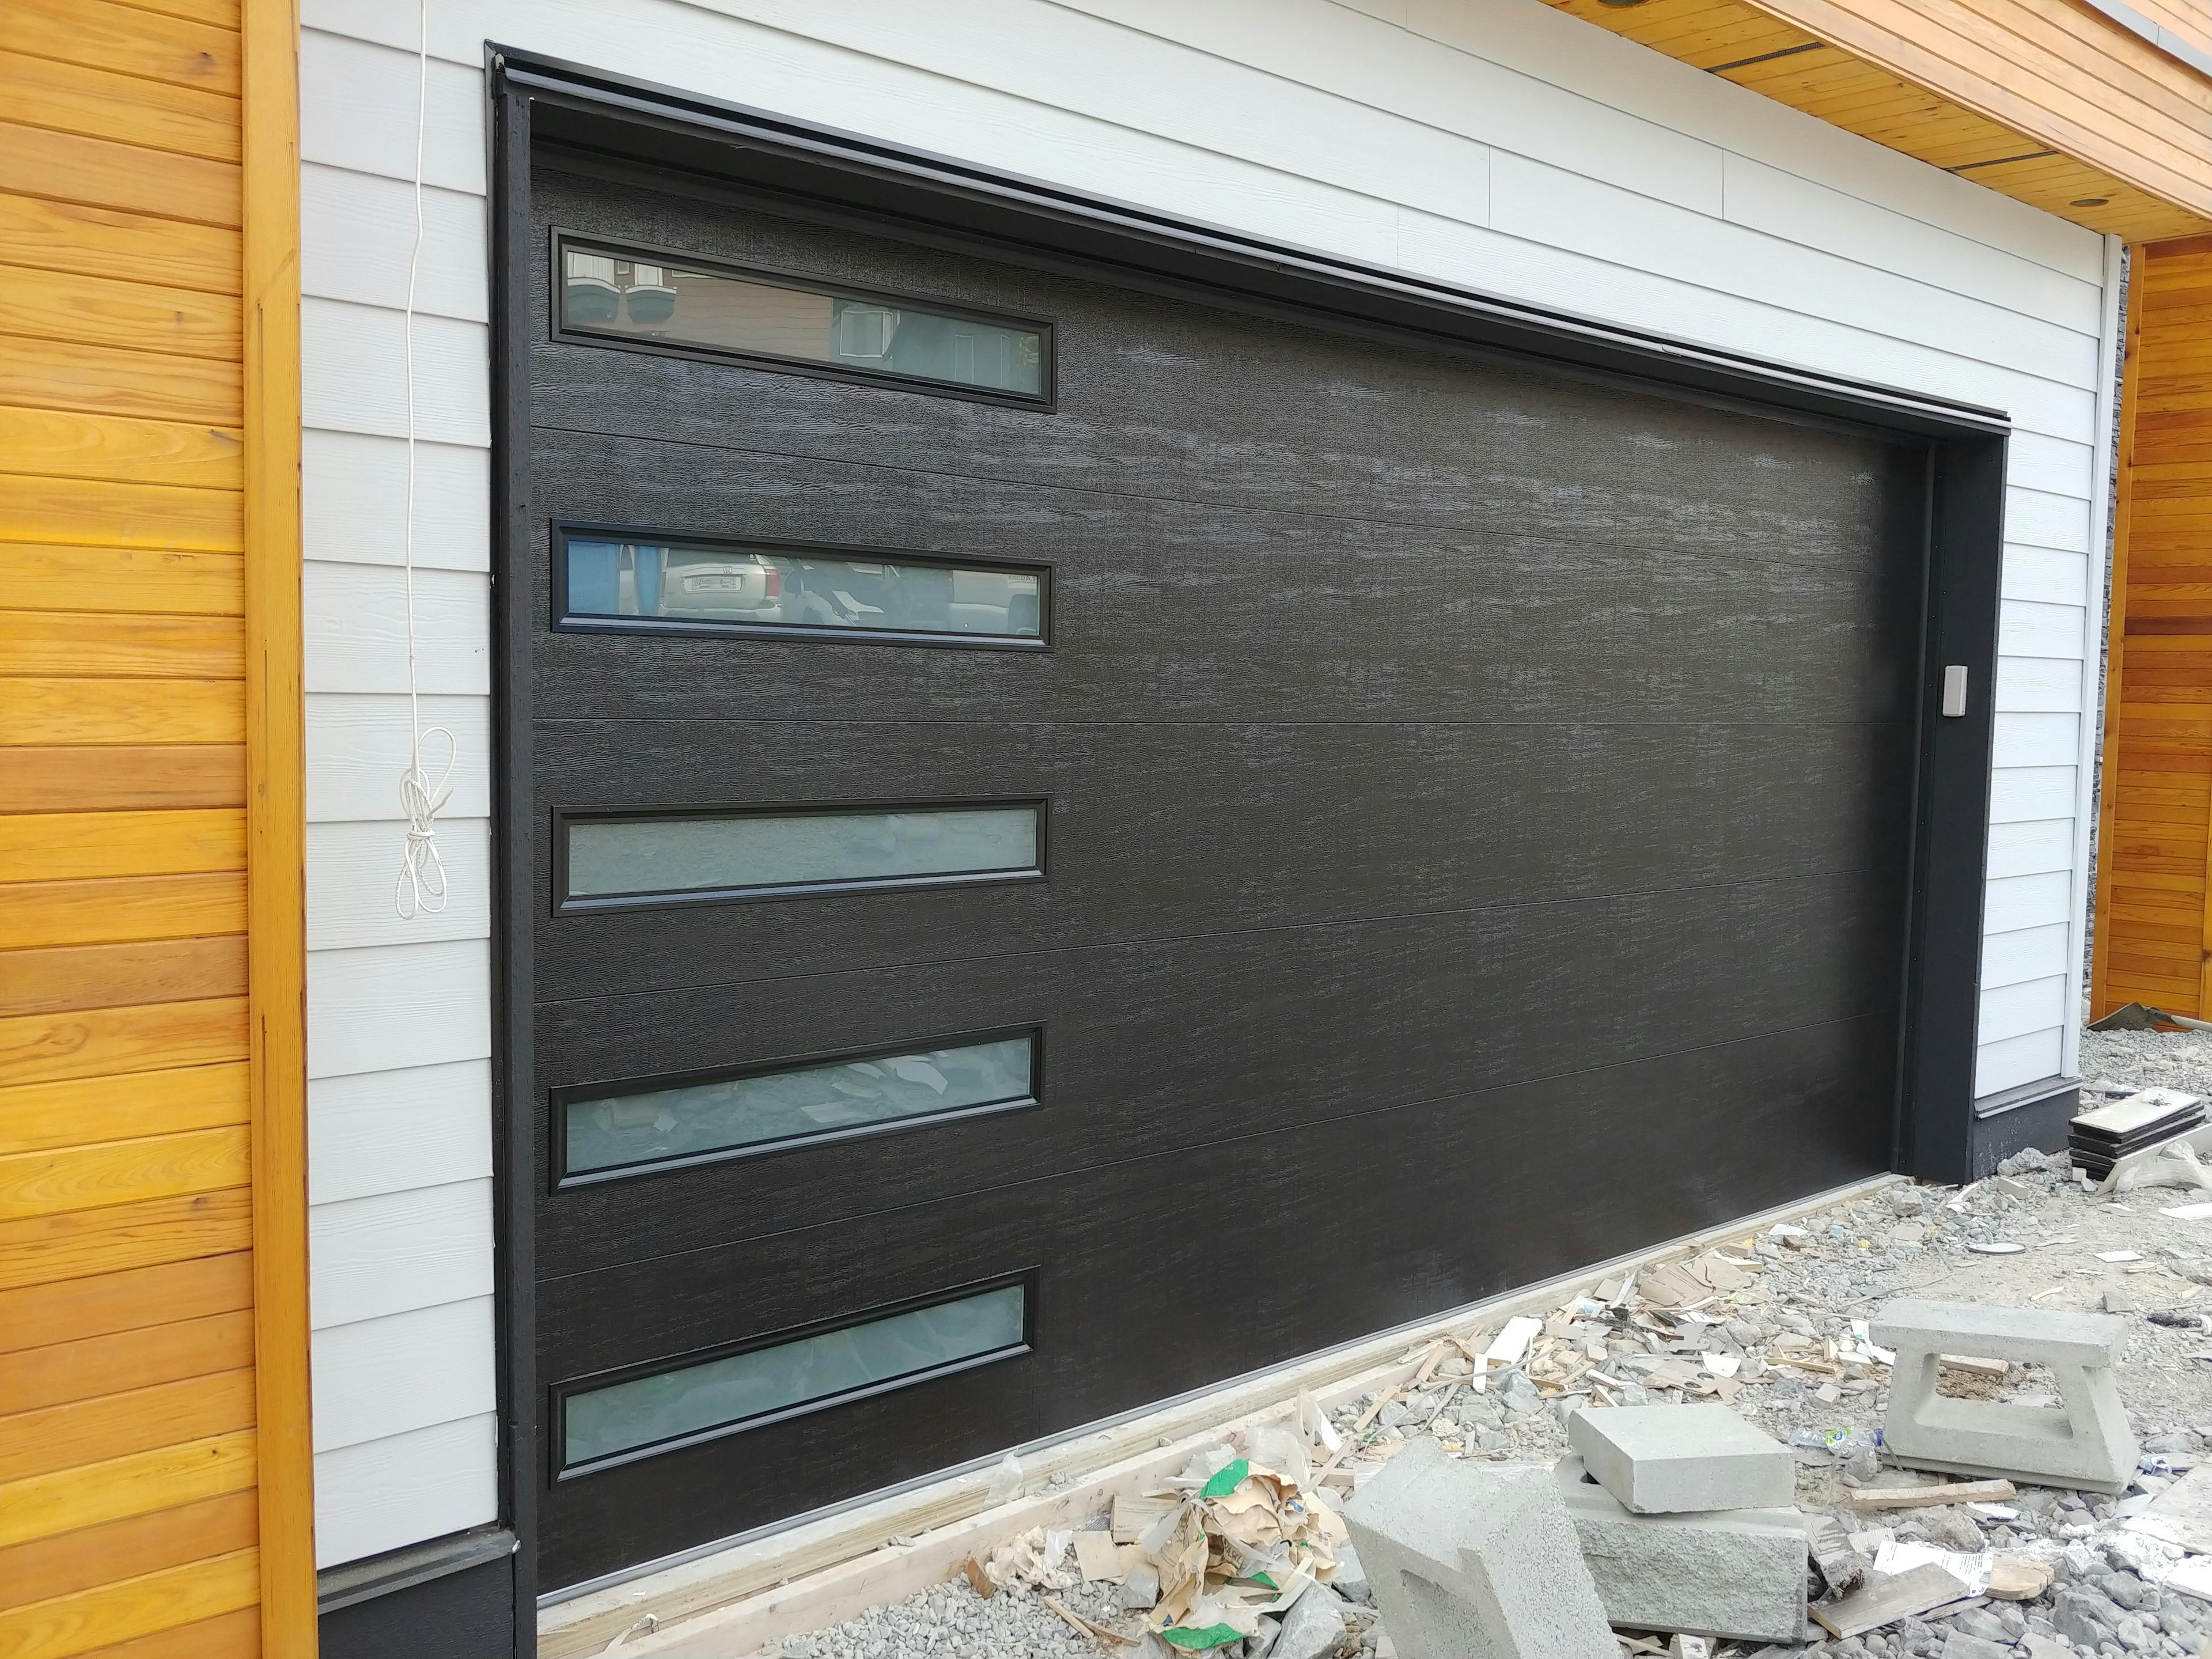 Dark garage door with slim glass panels on the left